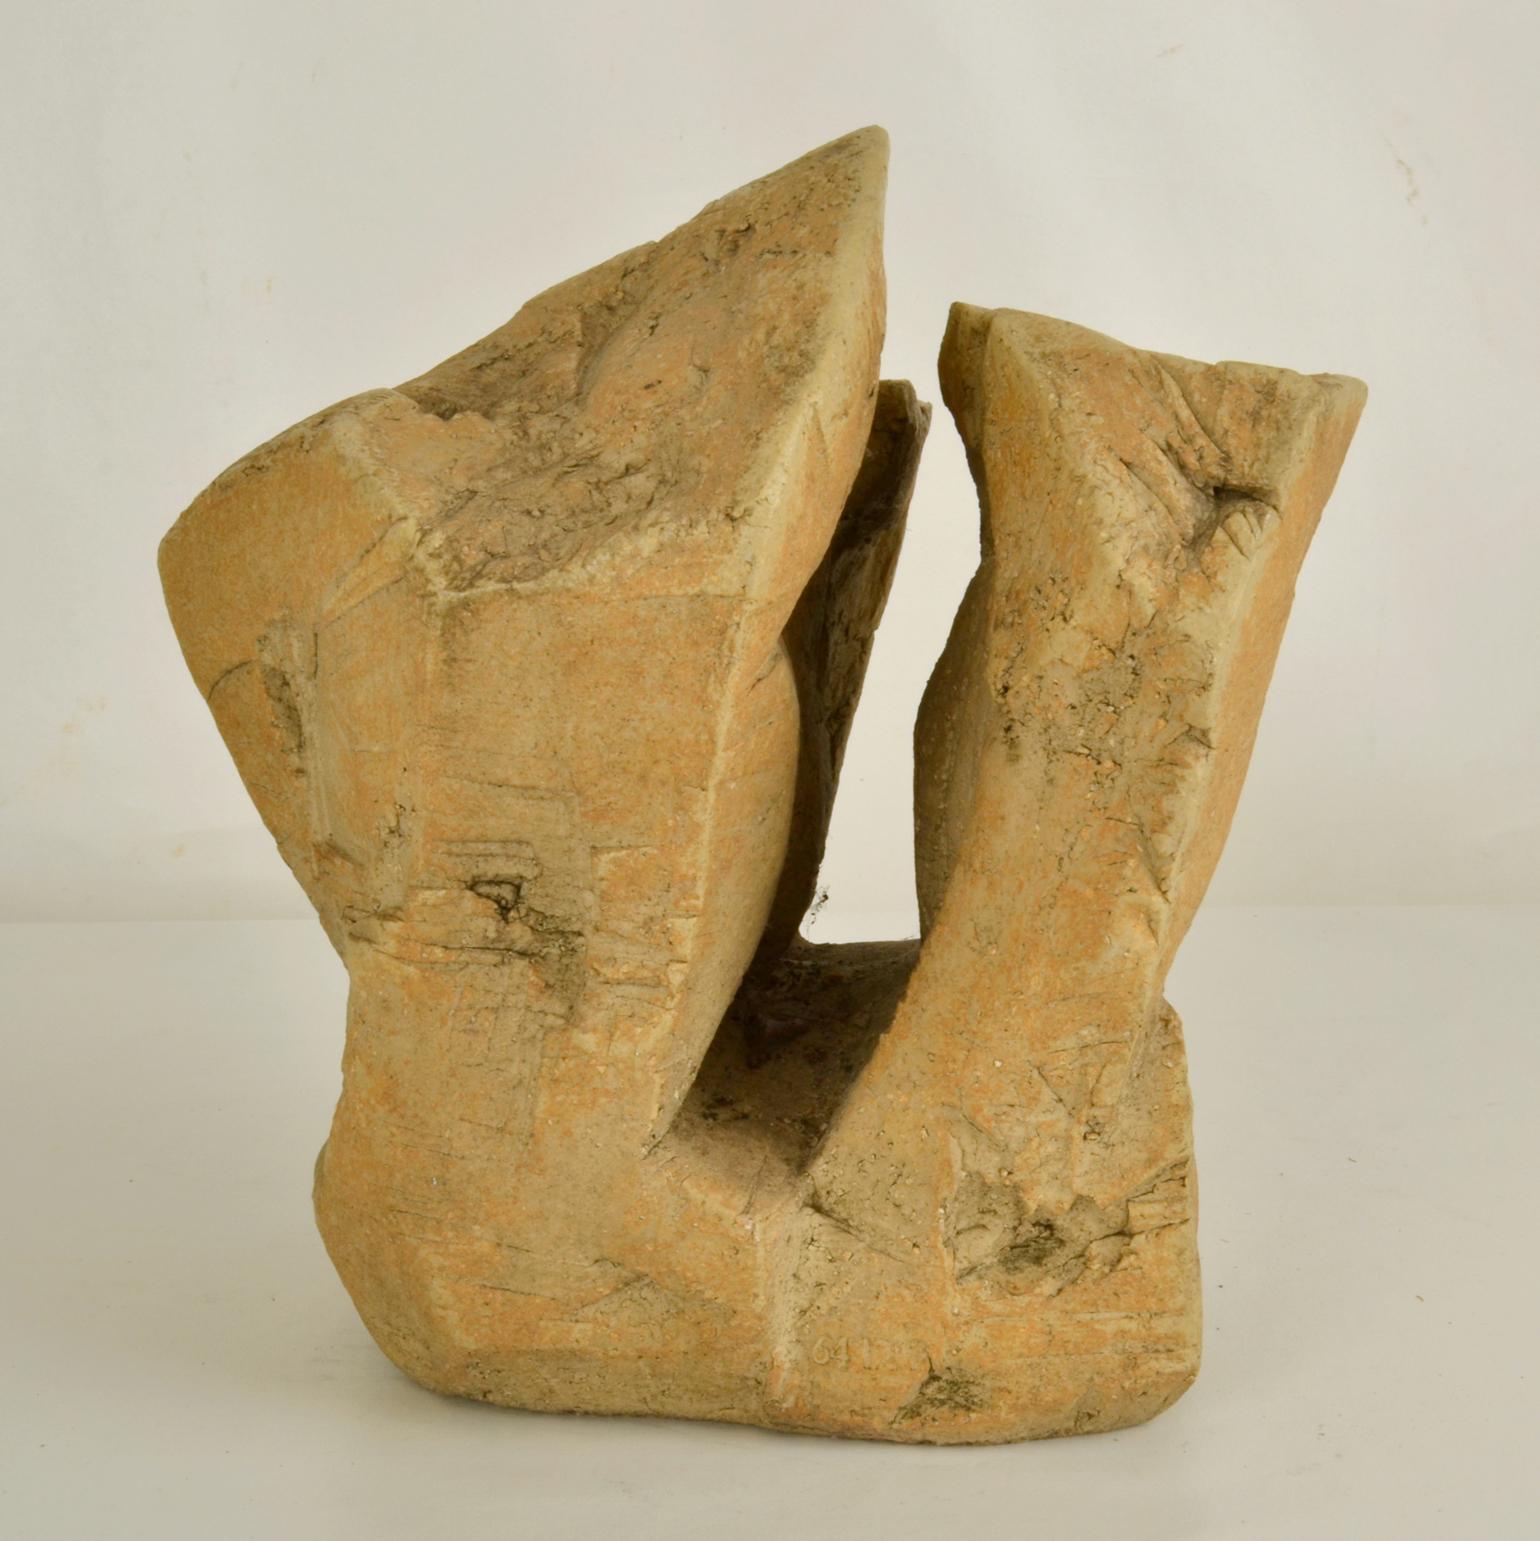 Die handgeformte Keramik-Felsenskulptur in Sandfarbe sieht aus wie die Küstenklippen an der britischen Küstenlinie. Bryan Blows Arbeiten sind eine Entdeckungsreise nicht nur in die sichtbare natürliche Welt der Bäume und Felsen, sondern auch in die